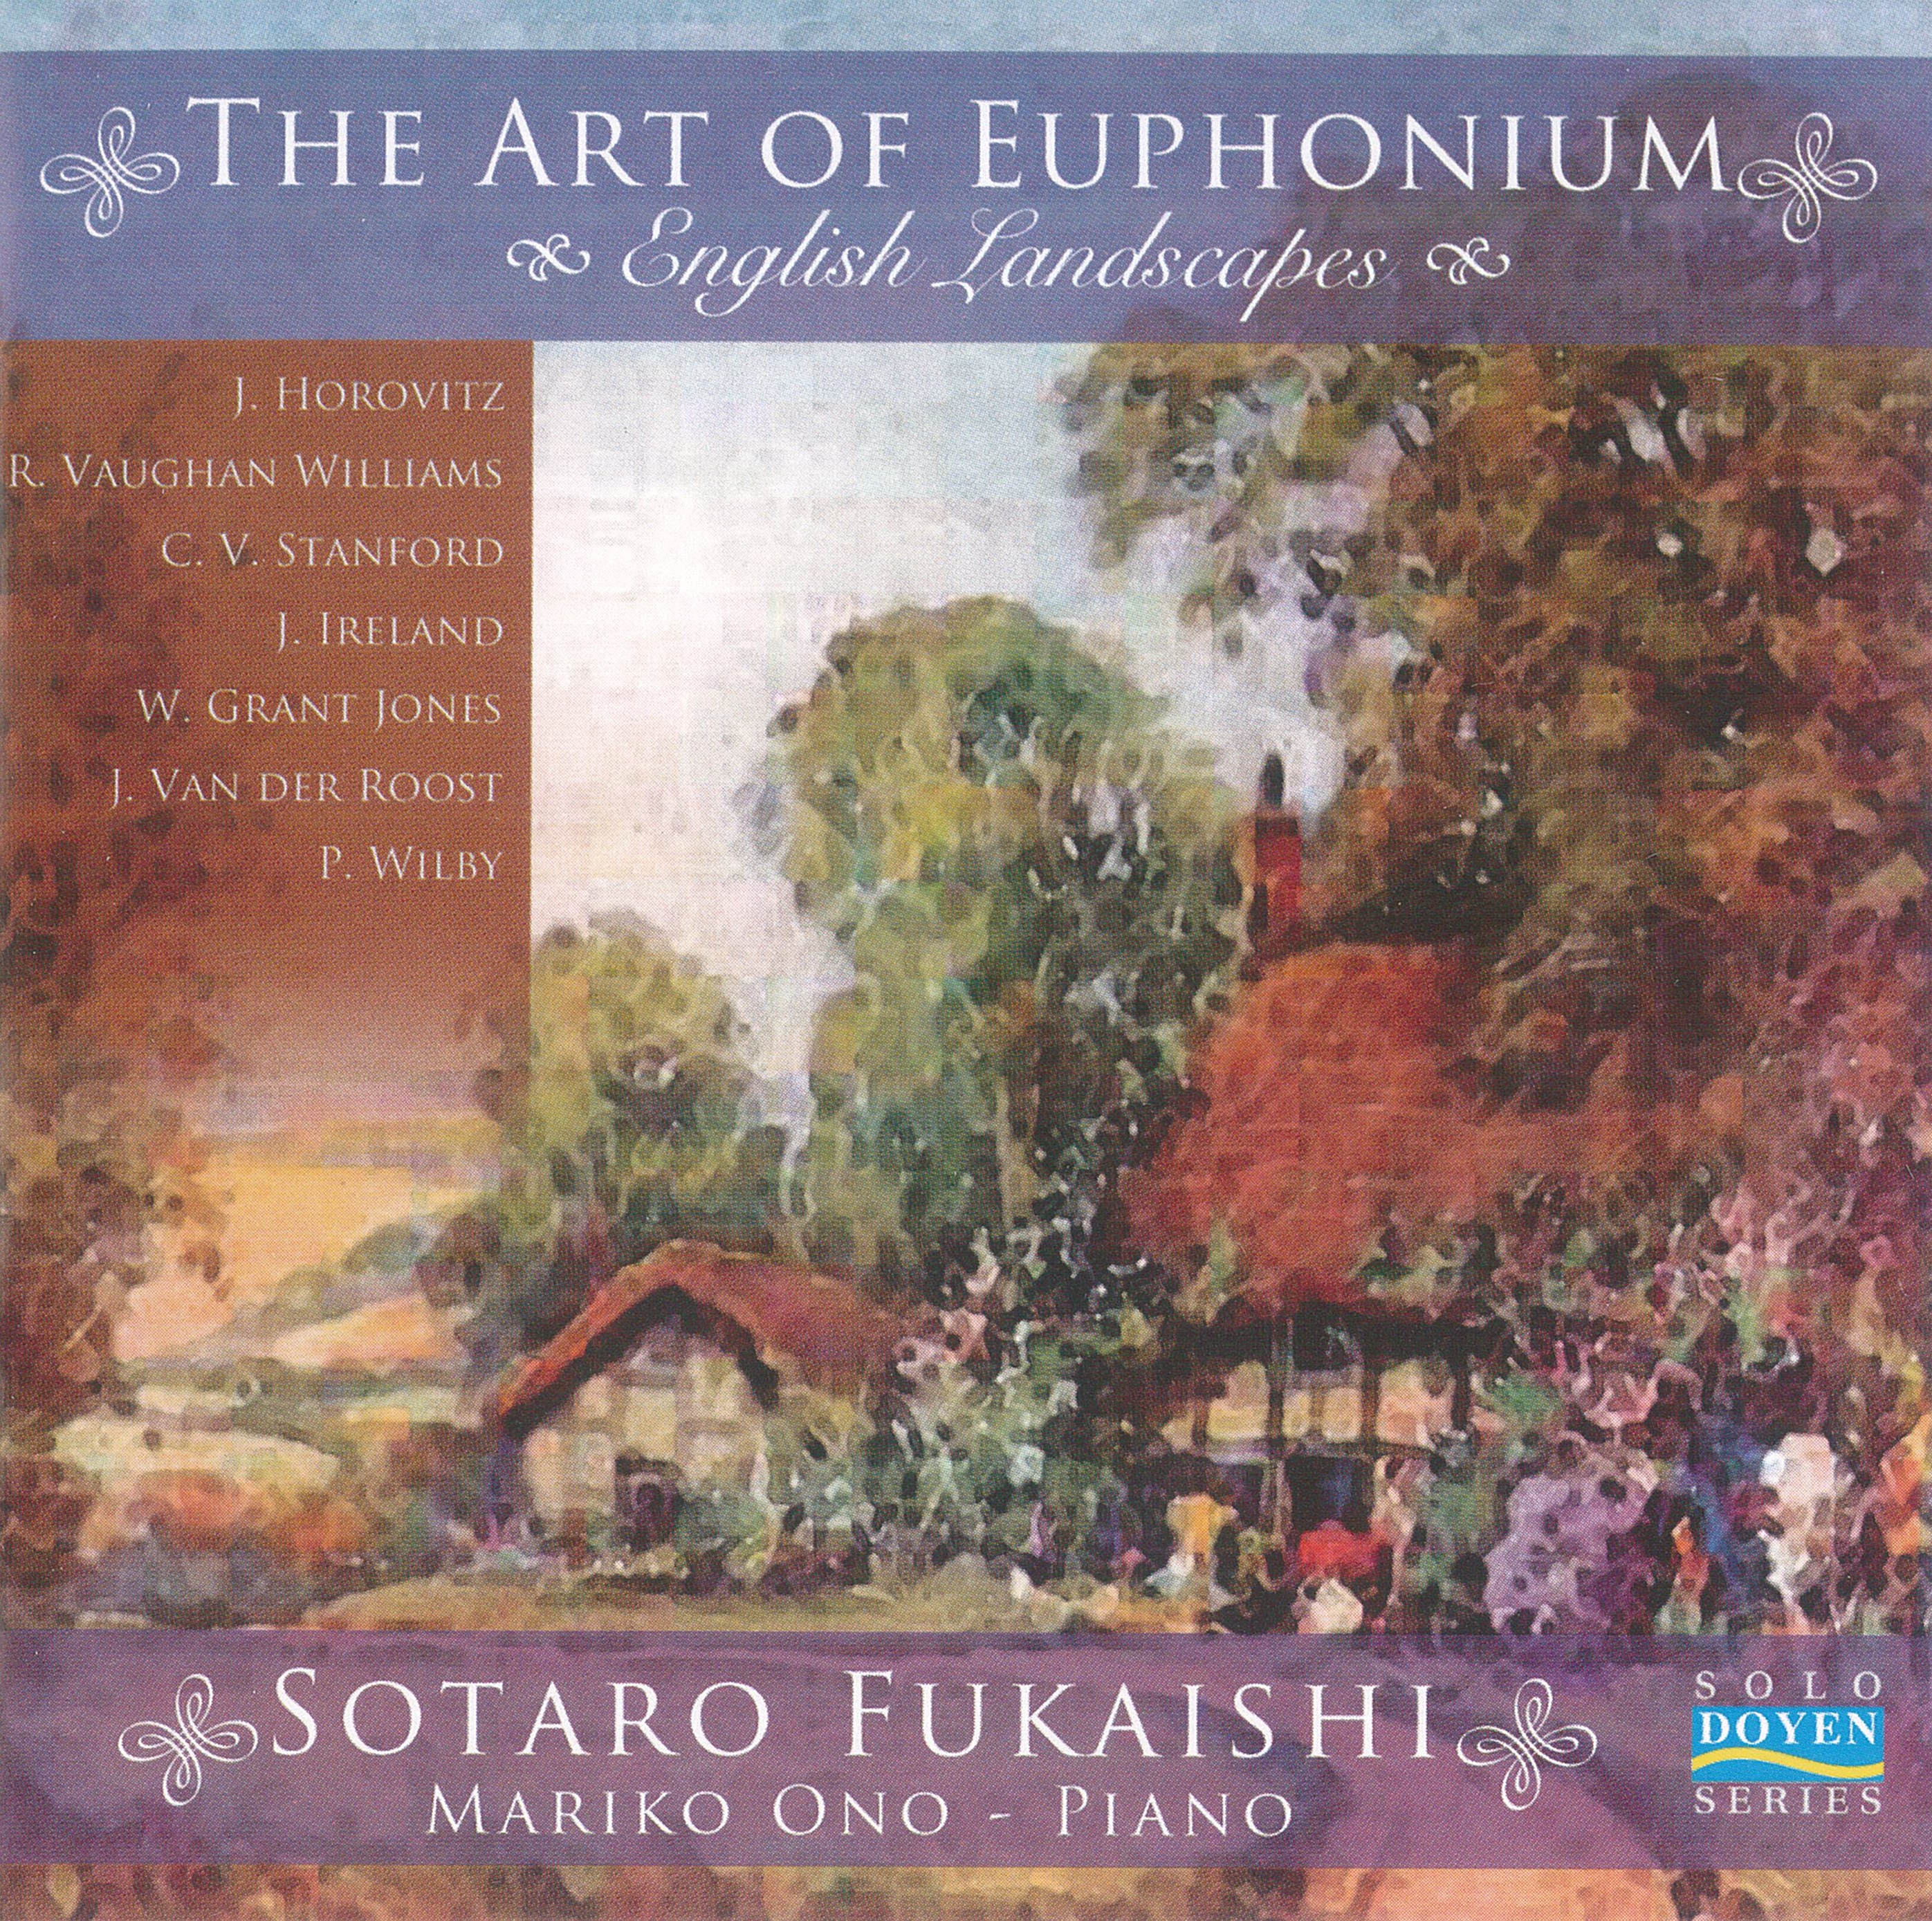 The Art of Euphonium - CD